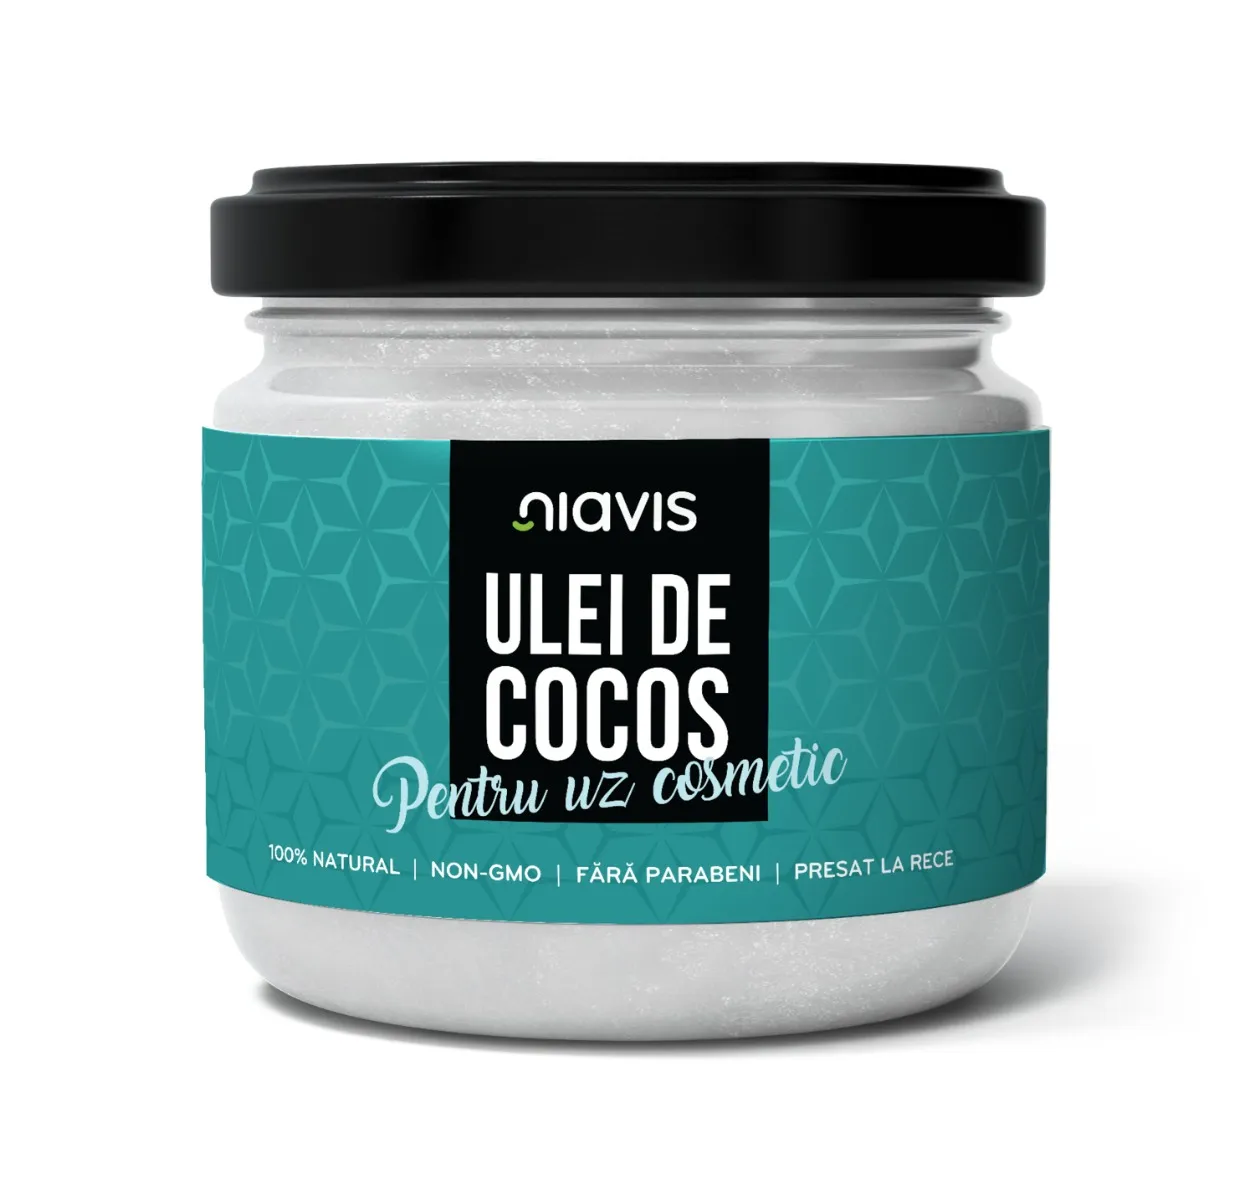 Ulei de cocos pentru uz cosmetic, 200g/220ml, Niavis